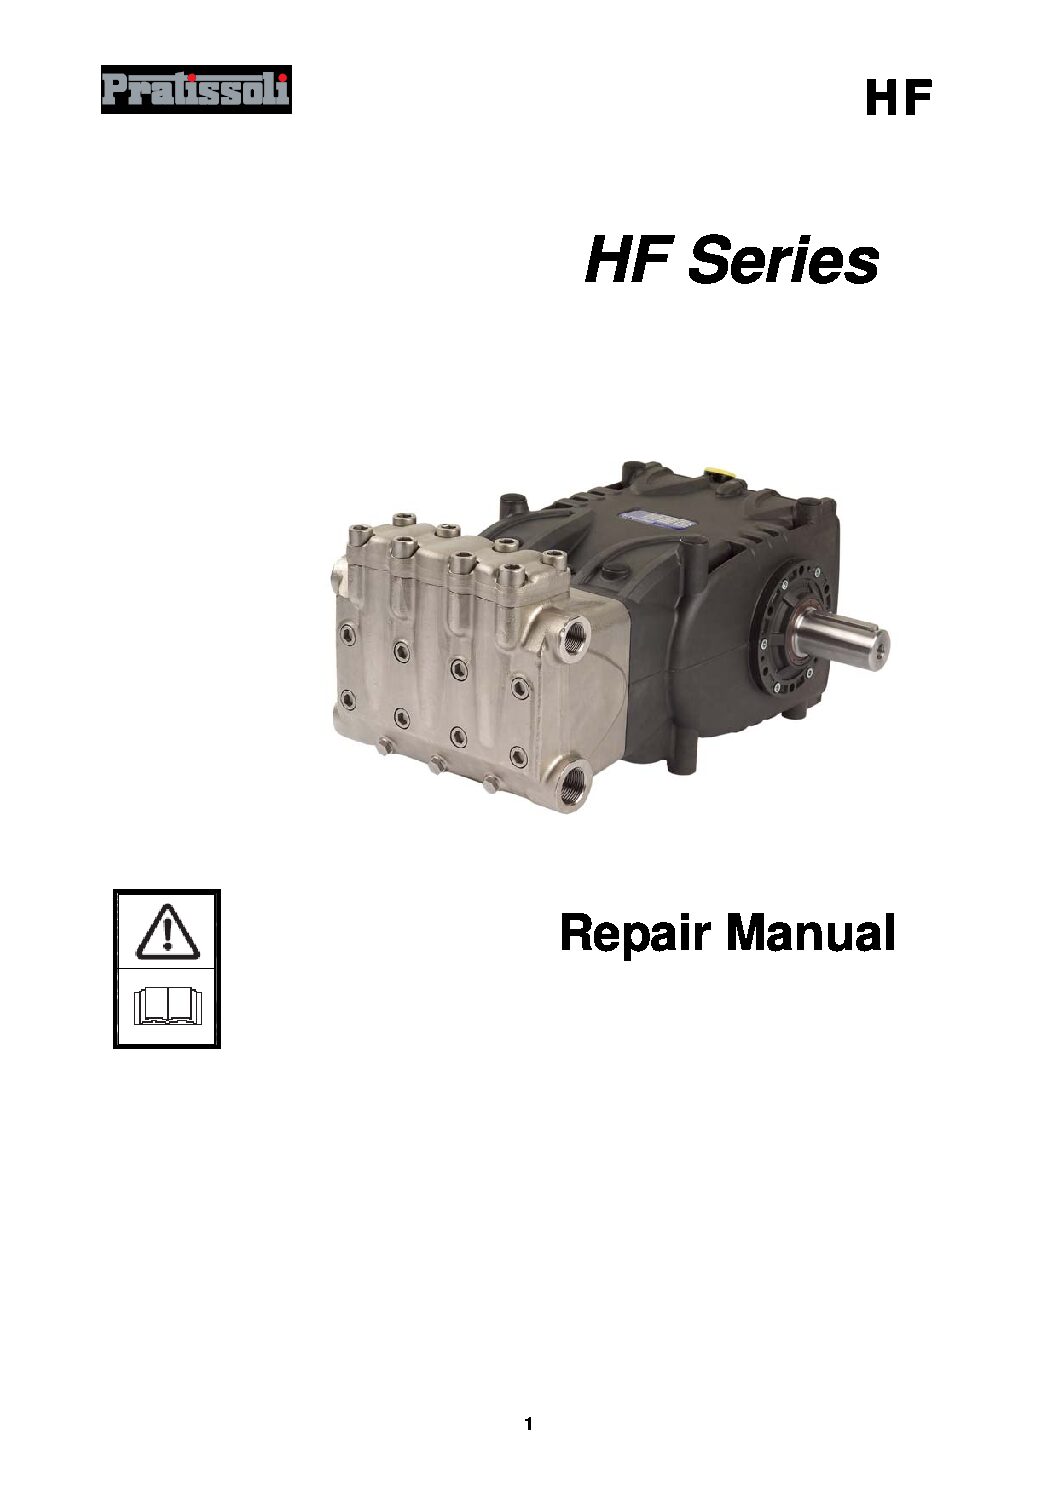 HF series repair manual